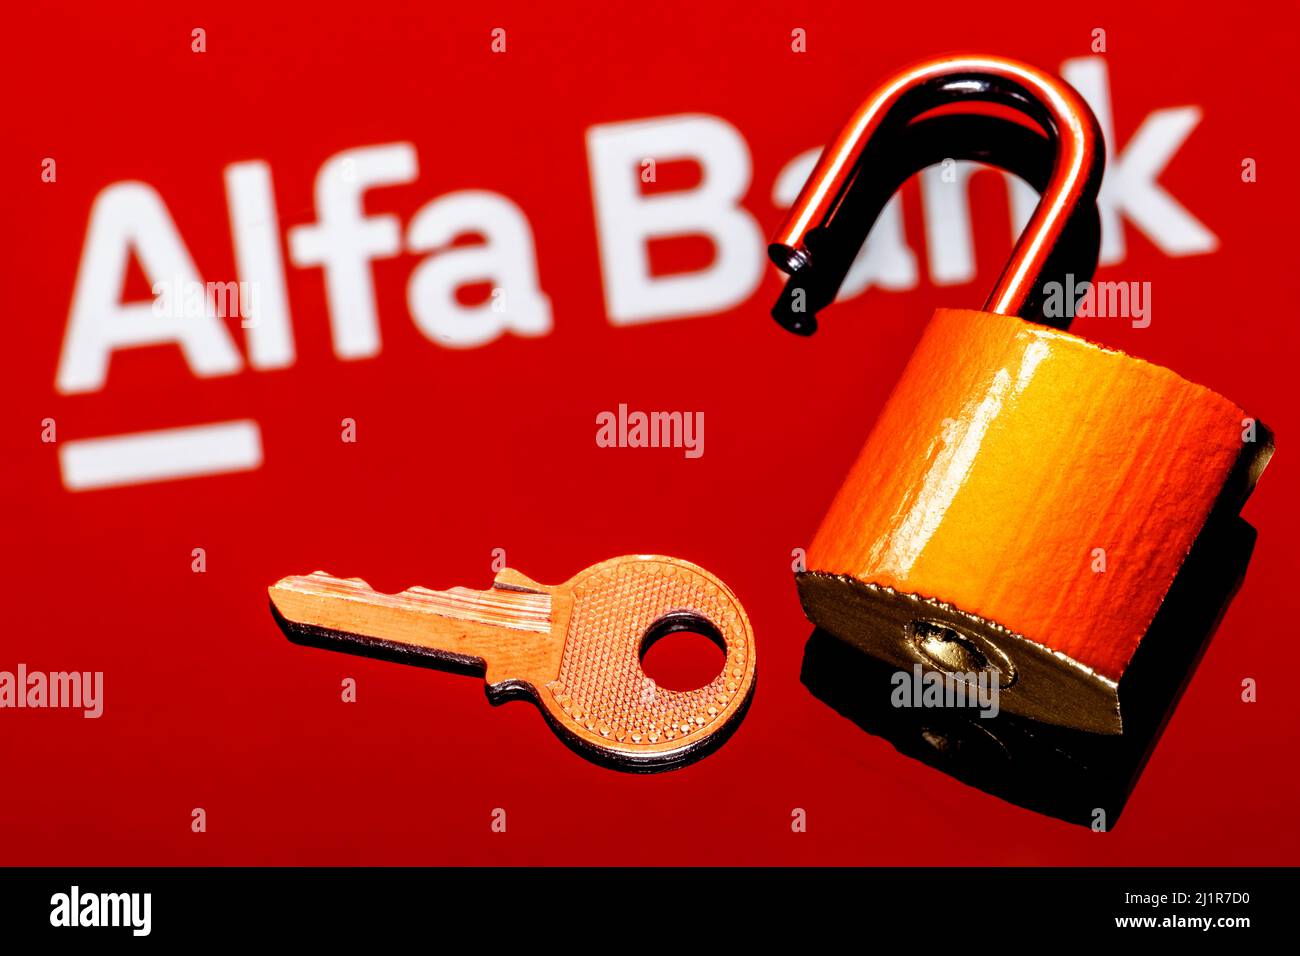 Ein offenes Sicherheitsschloss und Schlüssel auf dem Hintergrund des Alfa Bank Logos in Spiegelreflexion Stockfoto